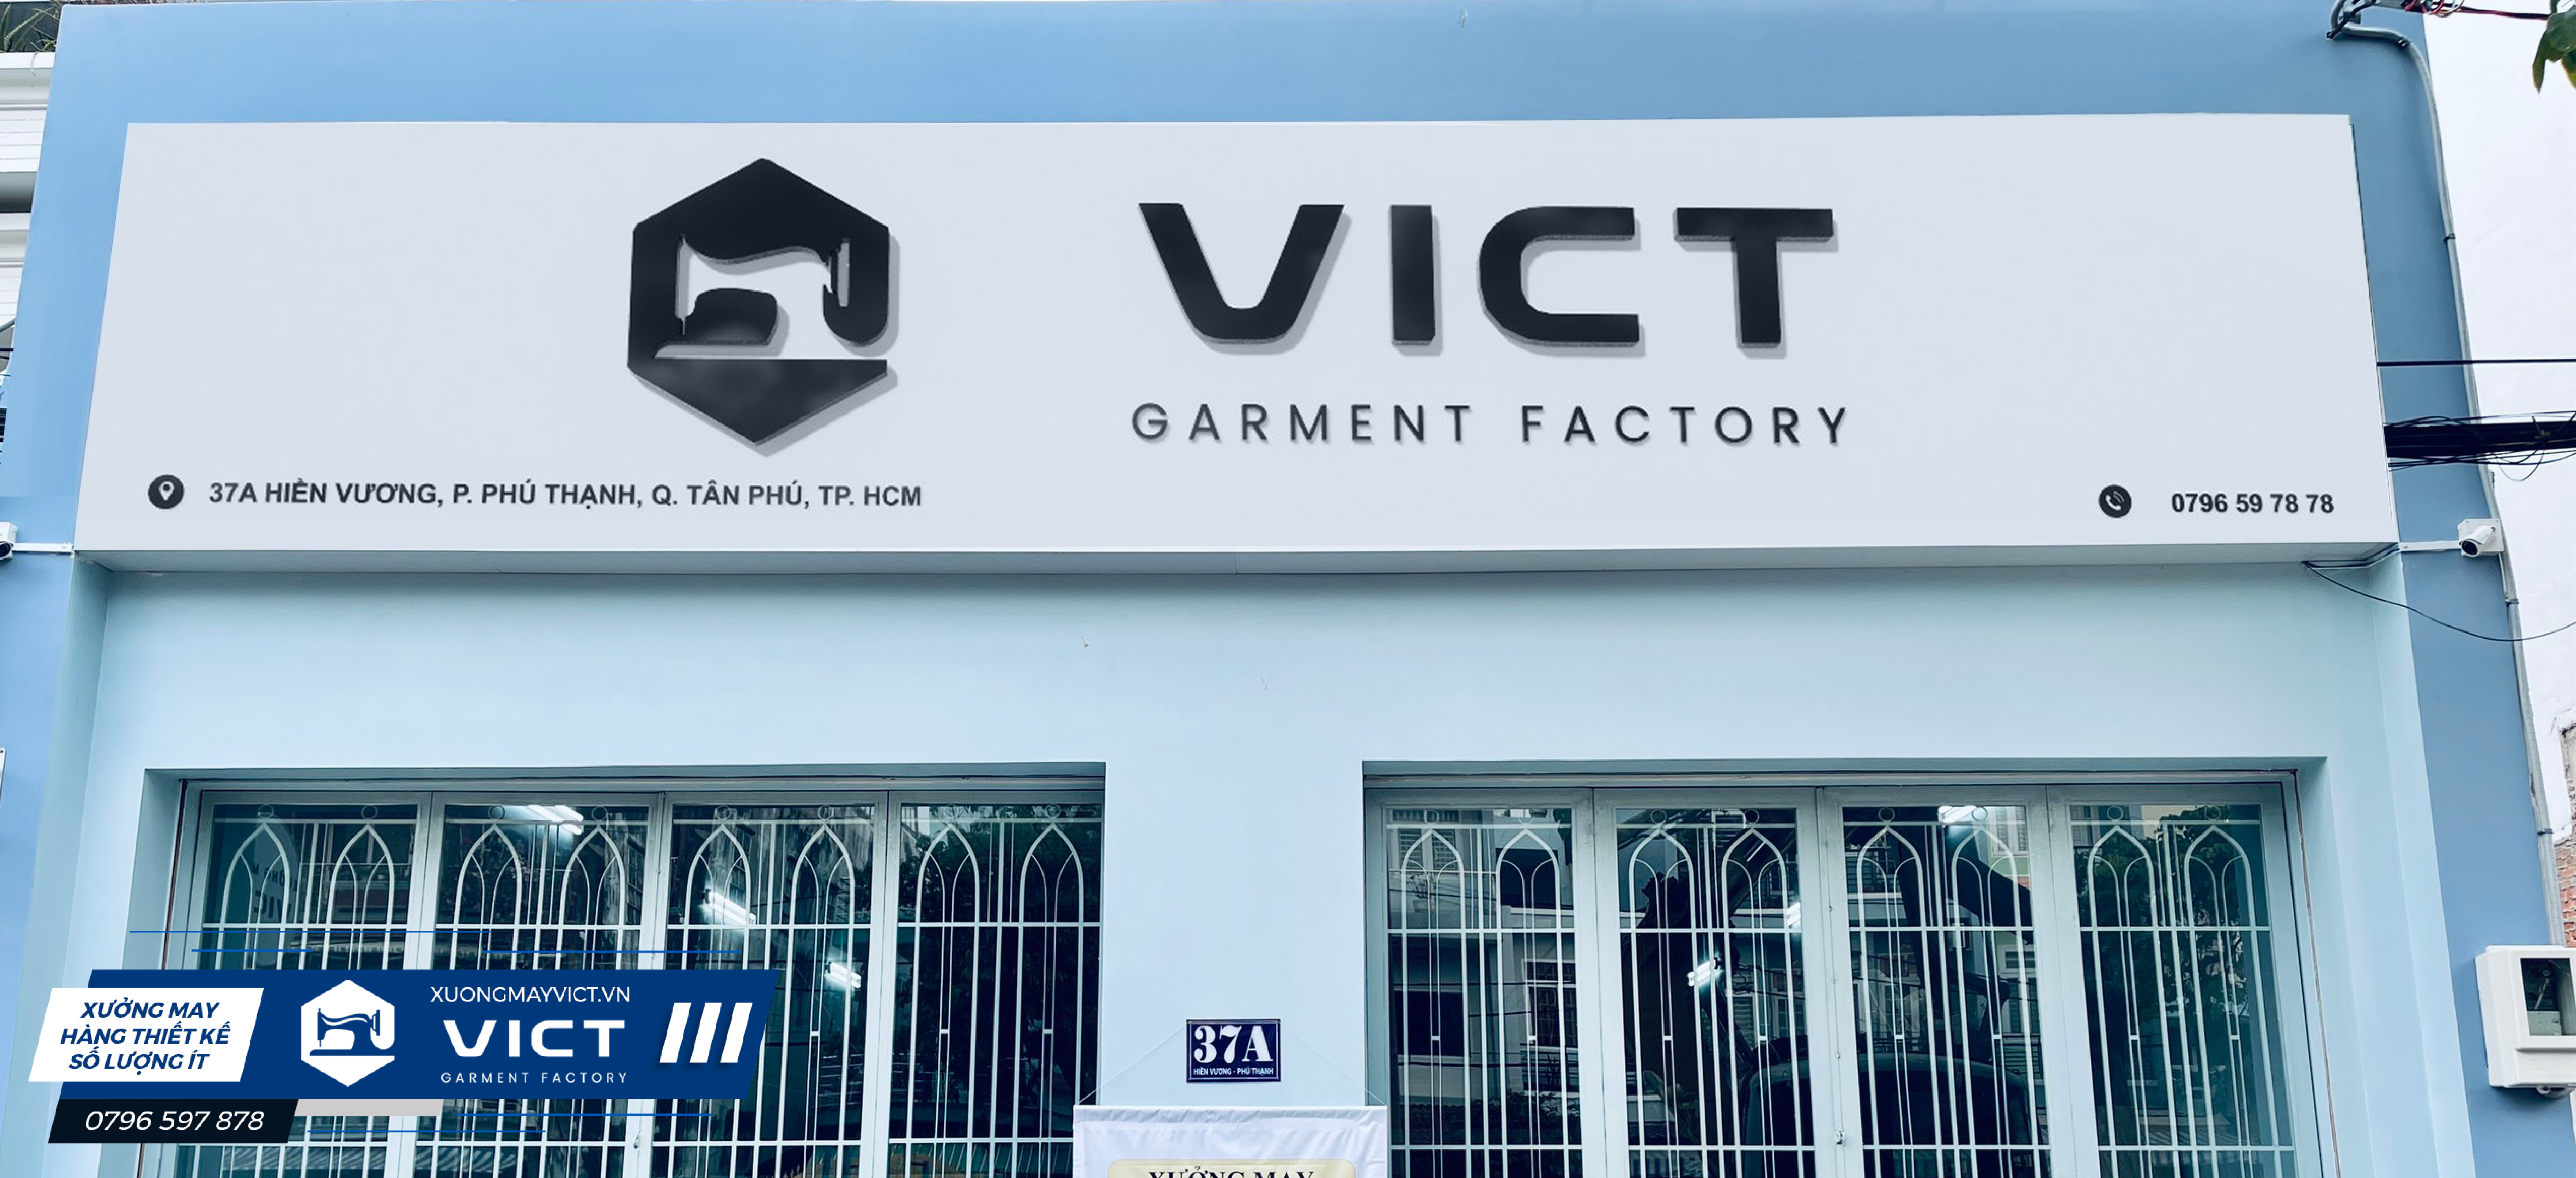 Nếu bạn cần tìm xưởng may gia công quận Bình Tân, xưởng may quần áo ở Gò Vấp, Tân Phú chất lượng thì hãy tìm đến xưởng may VICT